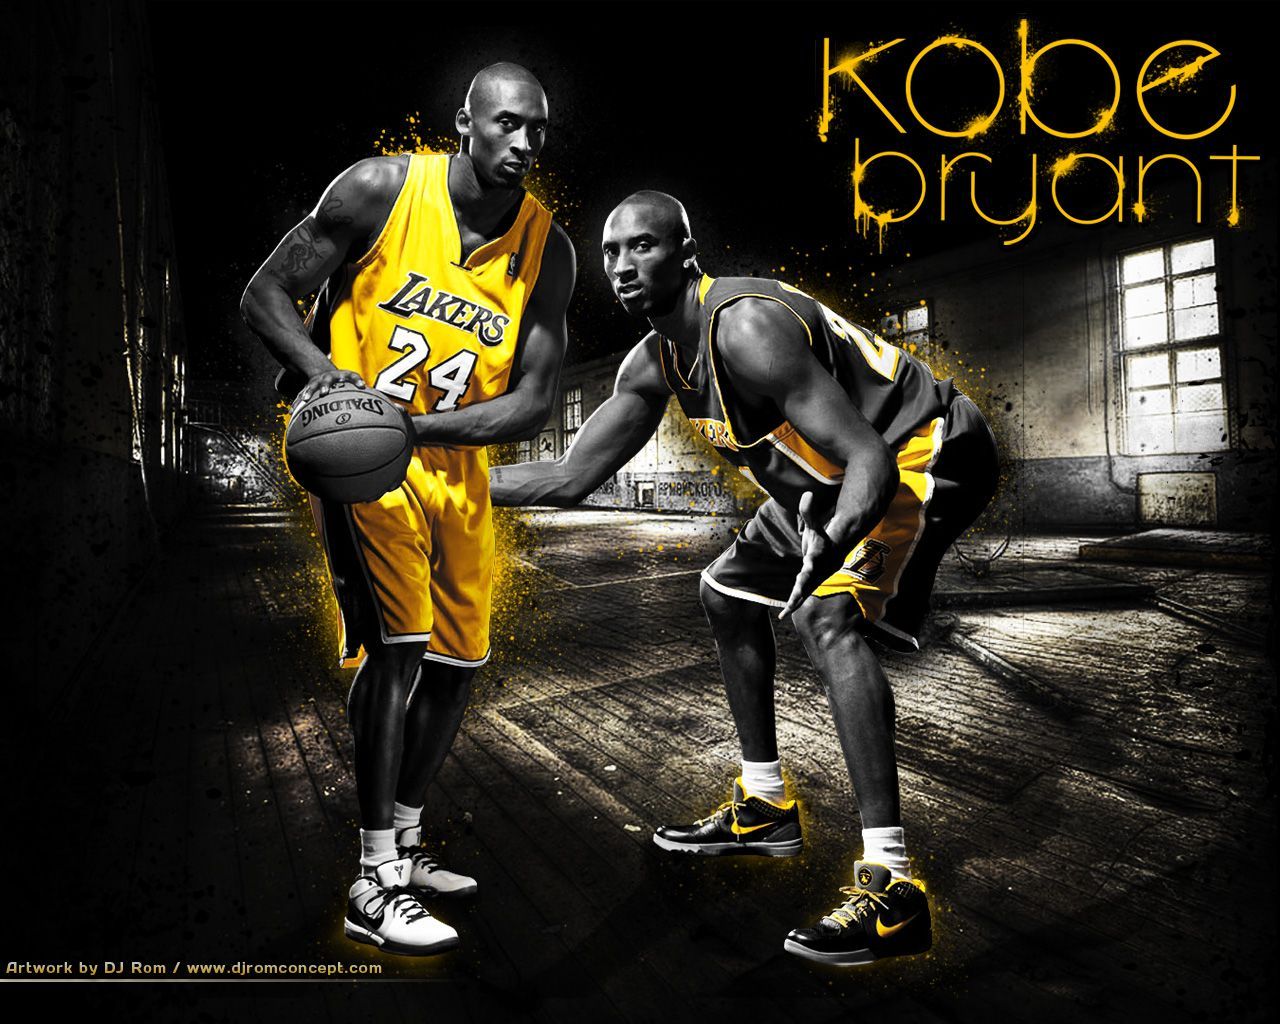 TOP HD WALLPAPERS: KOBE BRYANT WALLPAPERS. Kobe bryant wallpaper, Kobe bryant, Lakers wallpaper